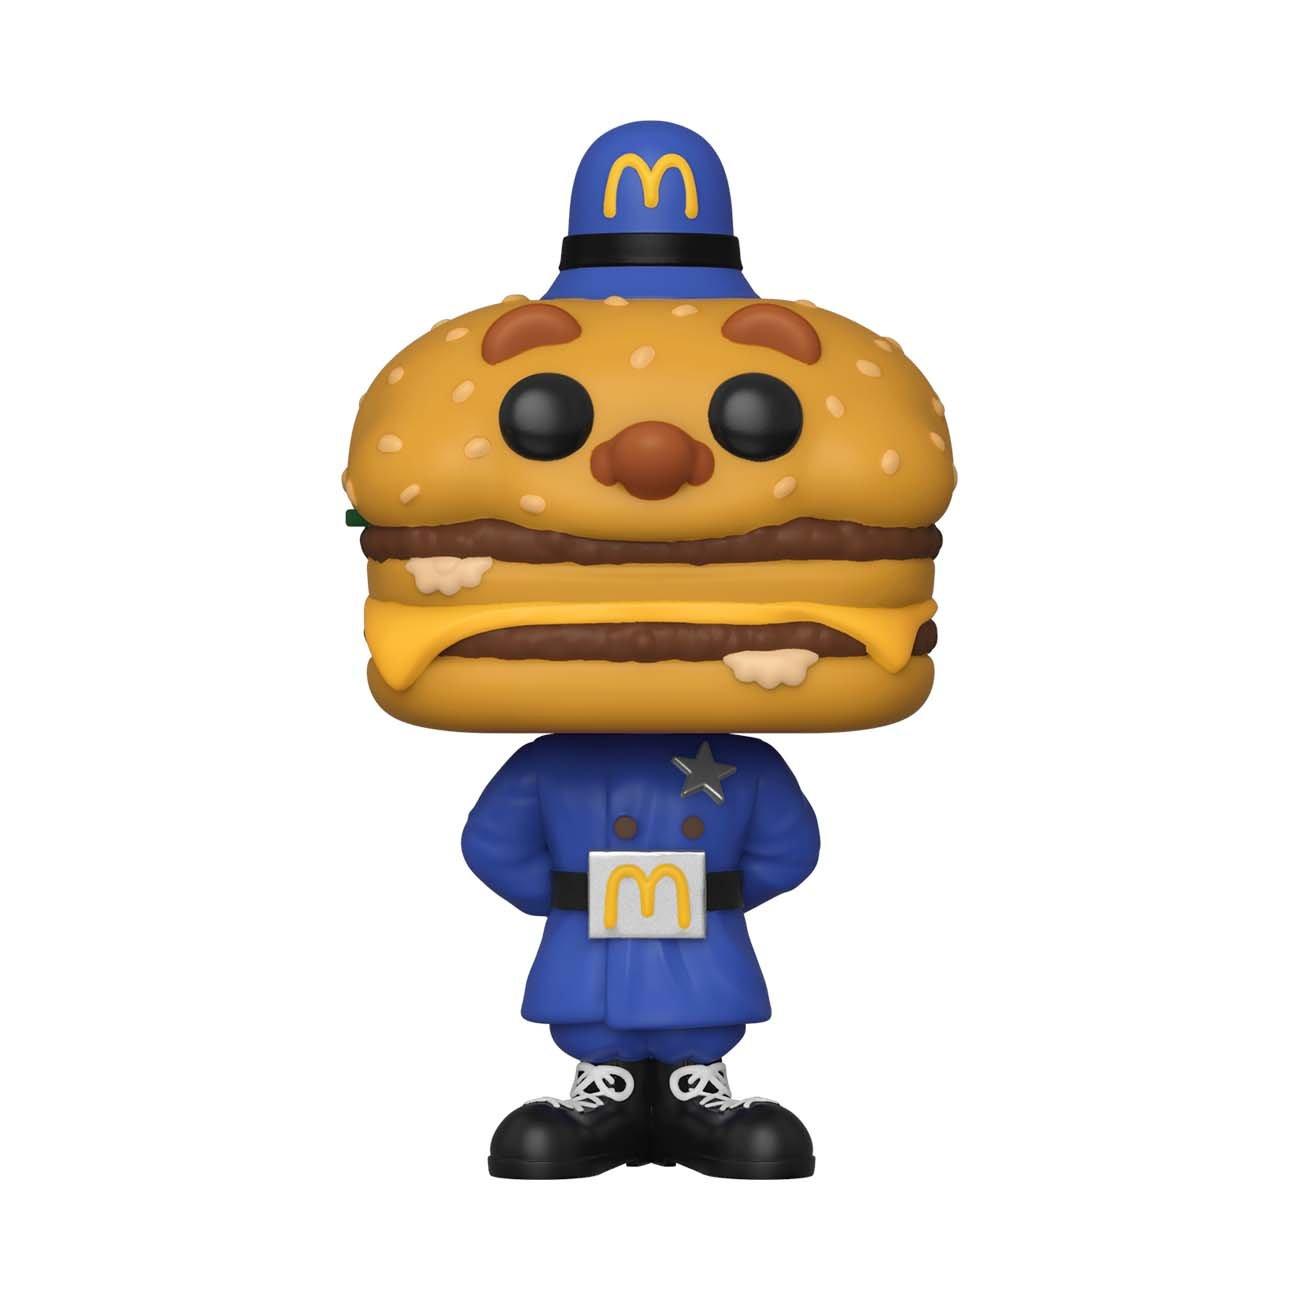 POP! Ad Icons: McDonald's Officer Big Mac